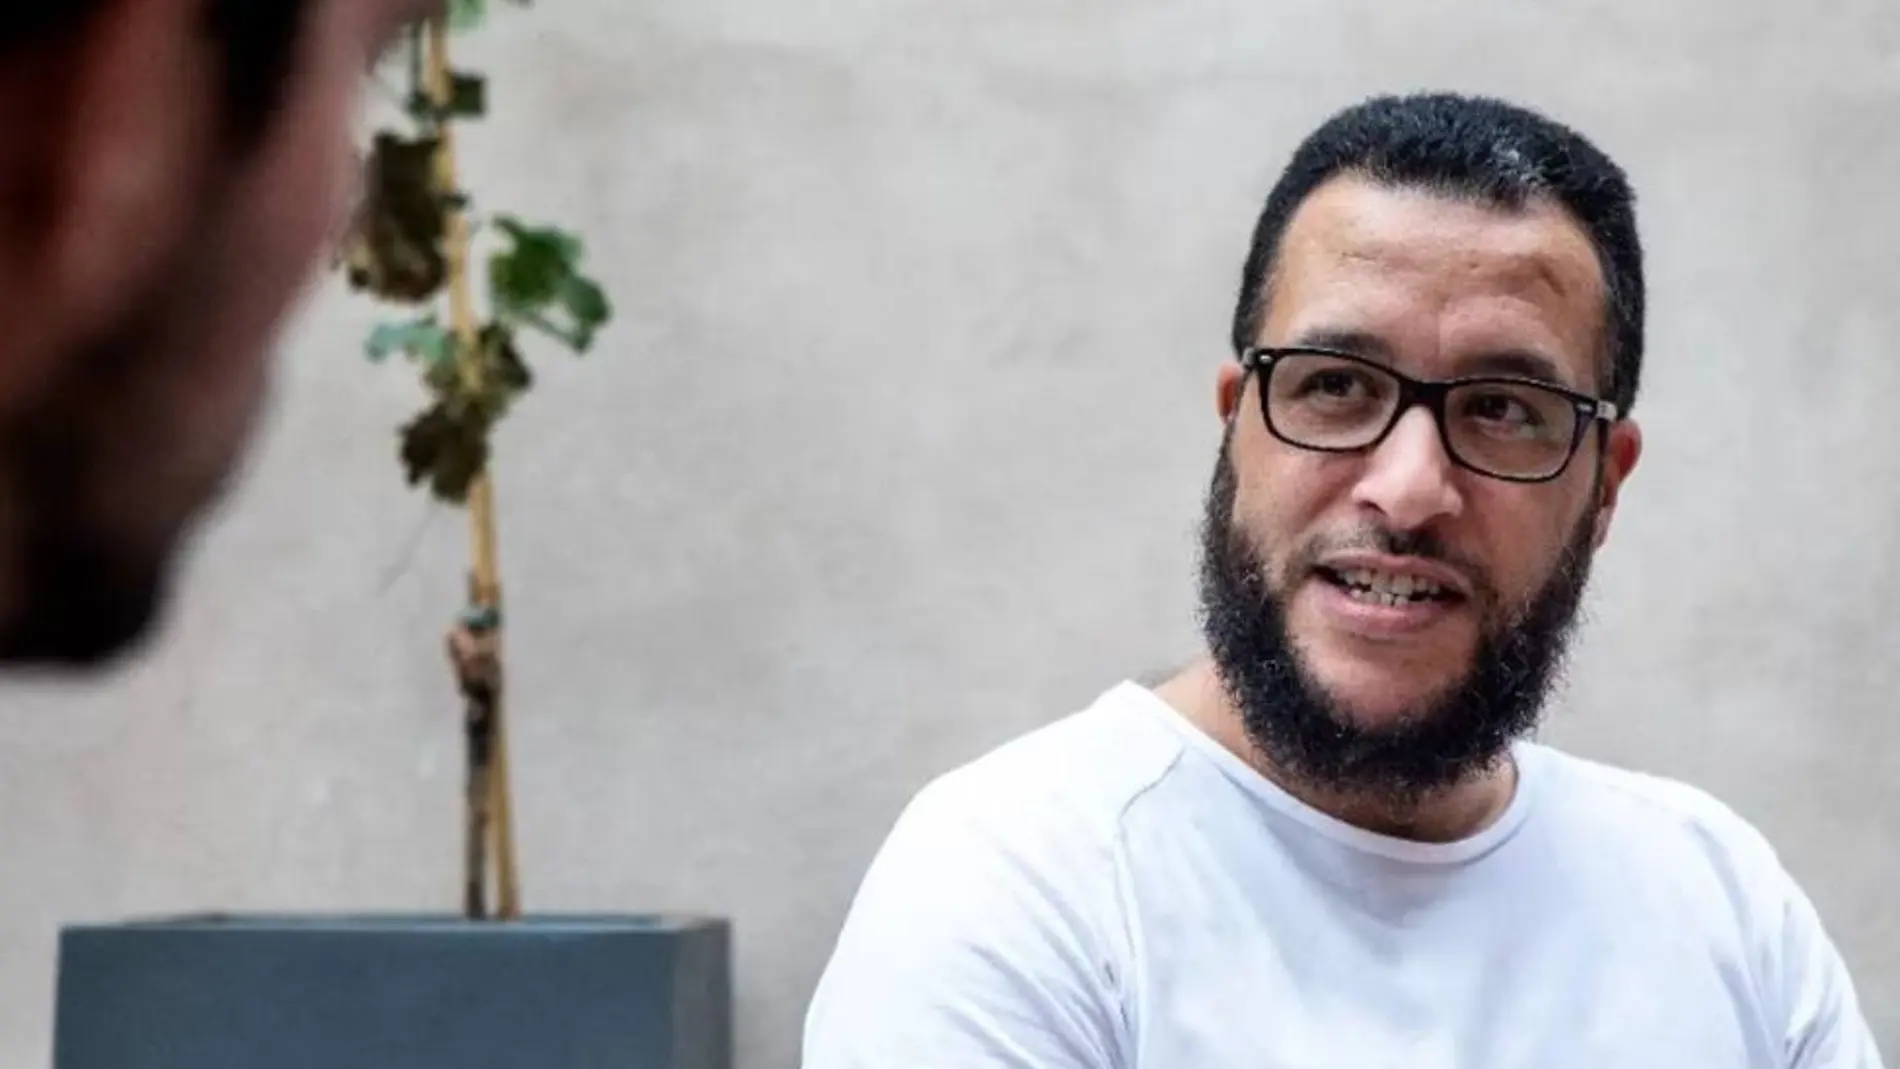 Mohamed Said Badaoui, líder islámico en Reus (Tarragona) a quien la Policía atribuye una radicalización en "postulados radicales proyihadistas"